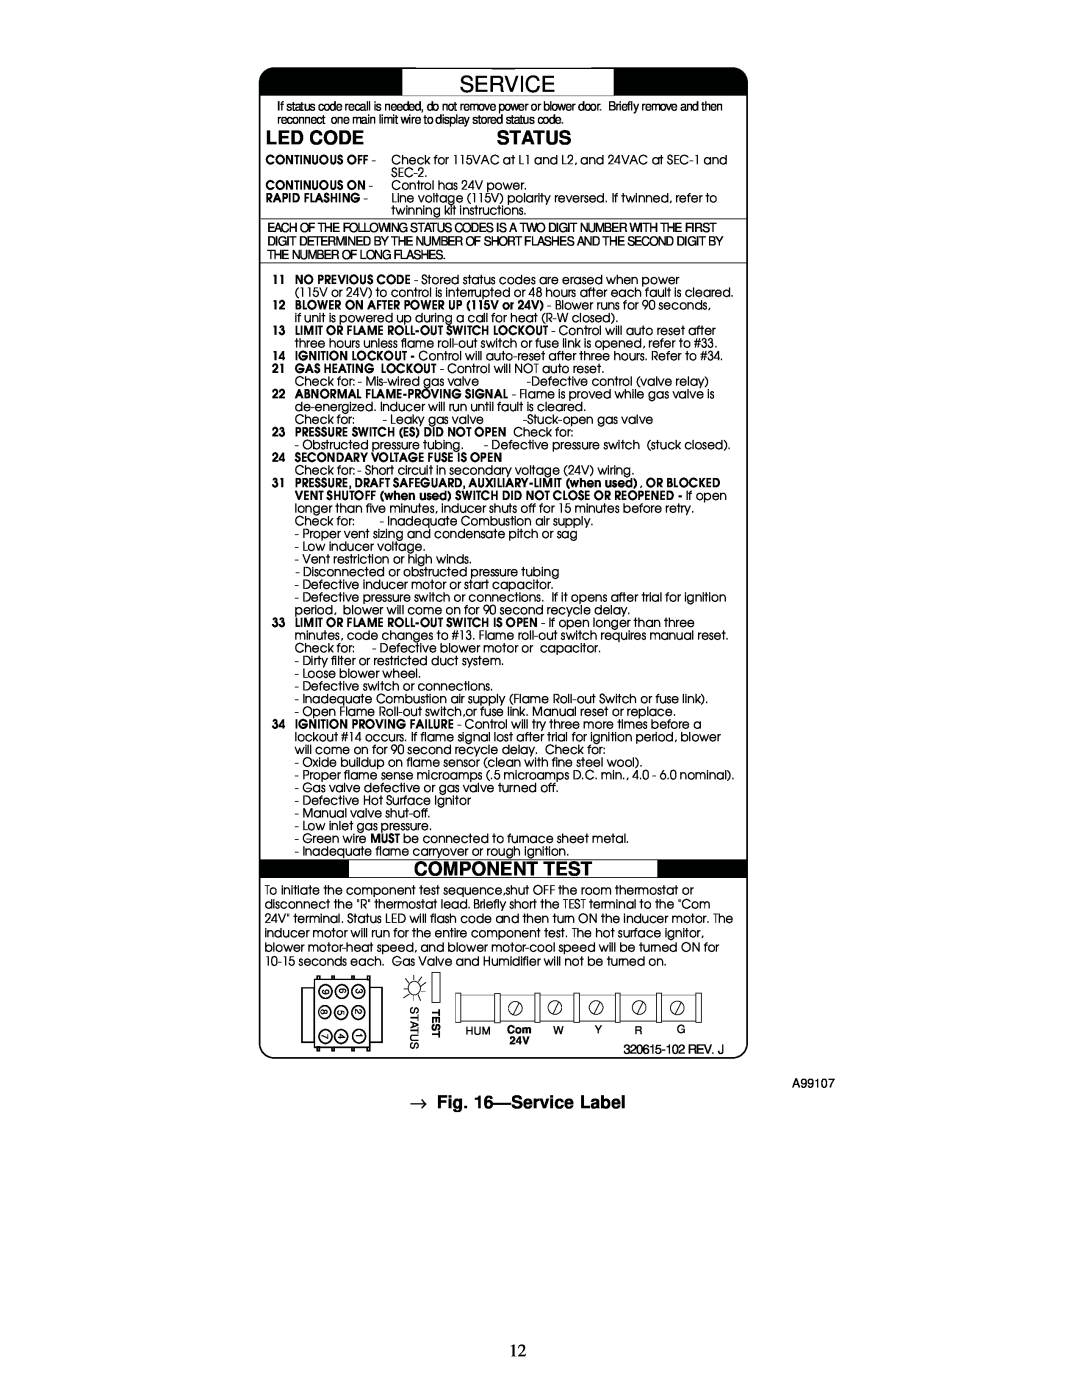 Carrier 58MXA instruction manual Led Code, Status, Component Test, ÐService Label 